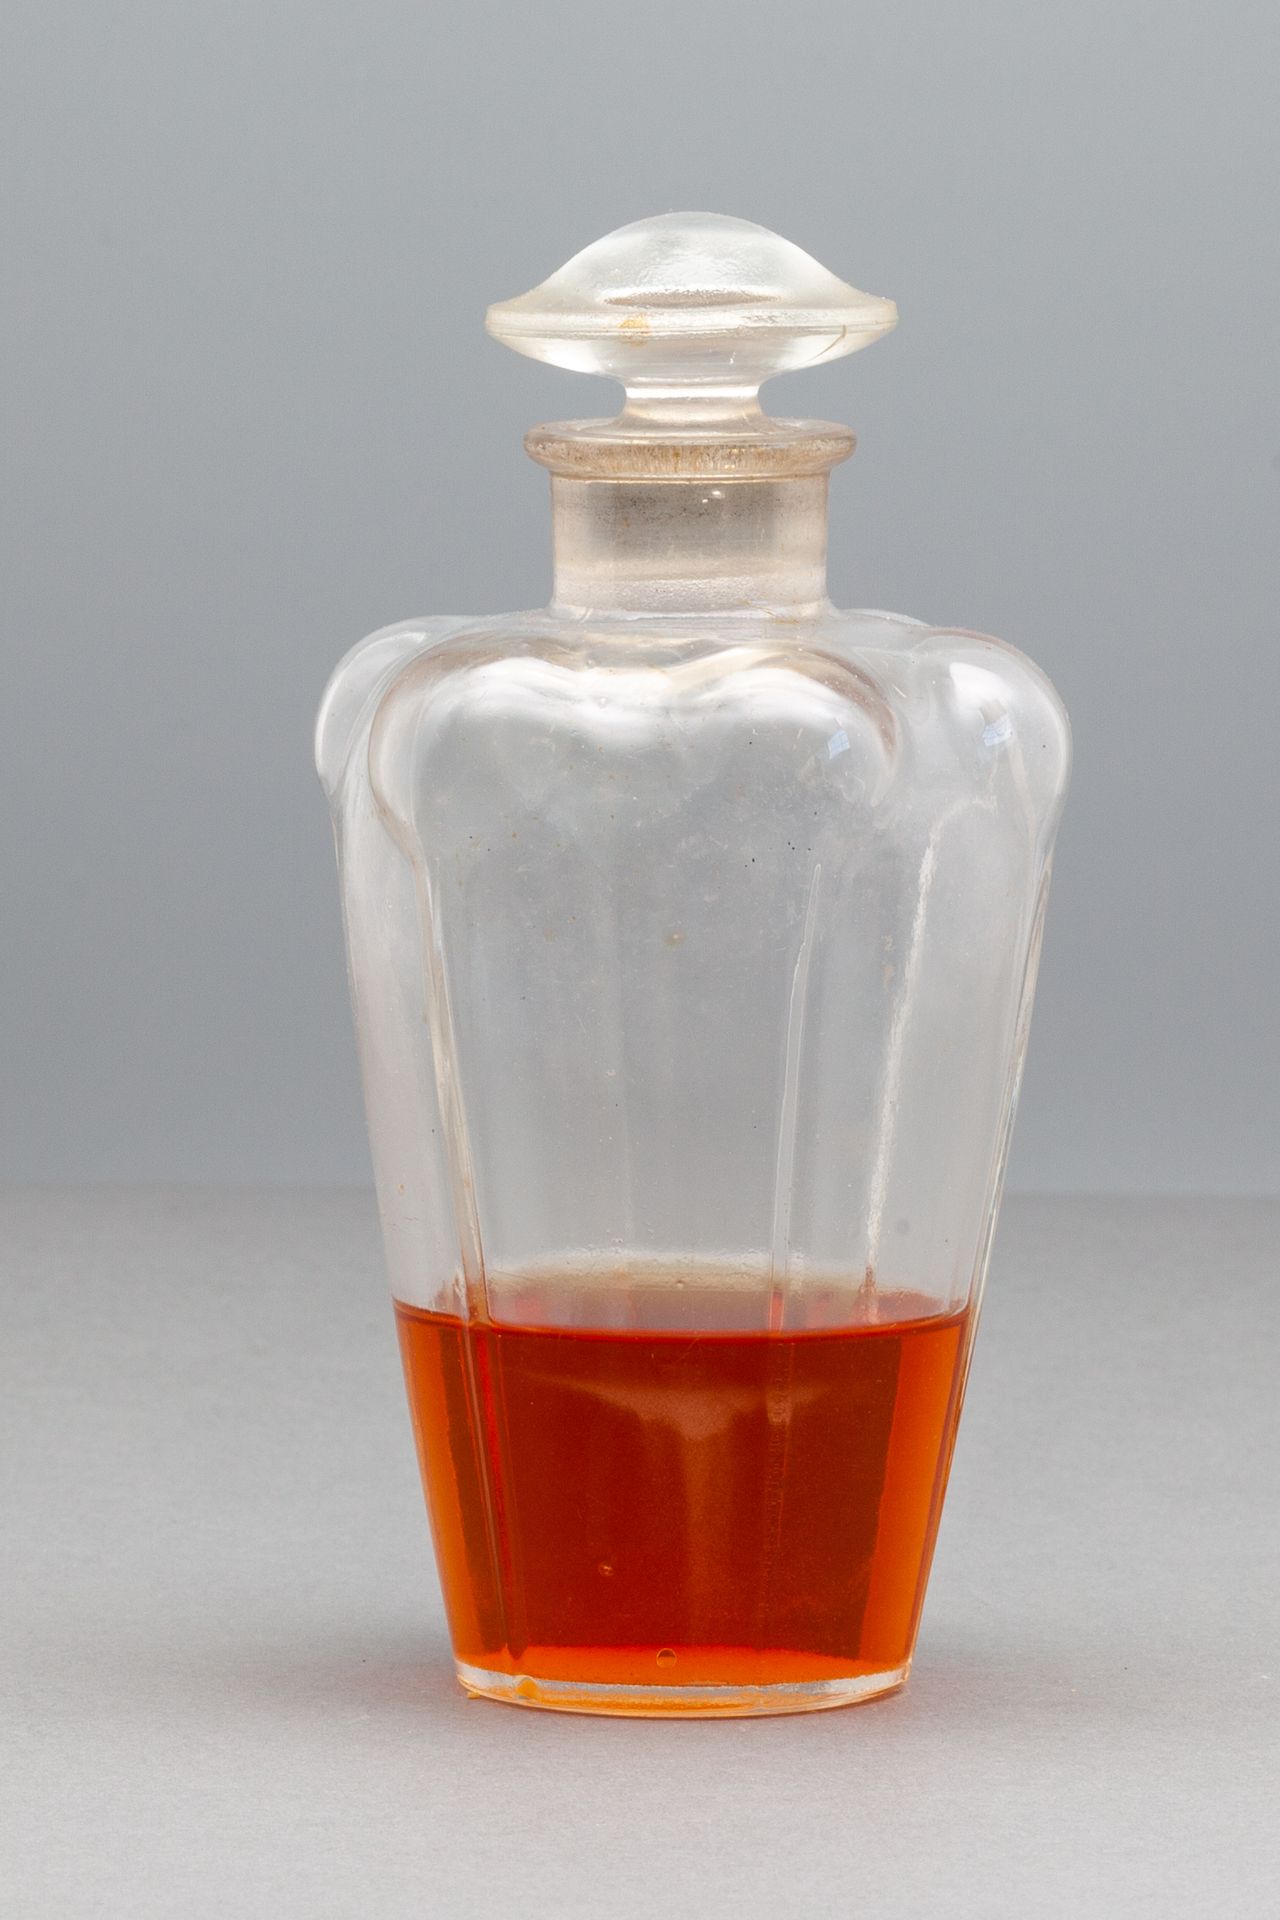 L.T.PIVER "ILKA EAU DE TOILETTE" 六边形华丽的玻璃瓶 - 帽形瓶塞。 高9.5厘米